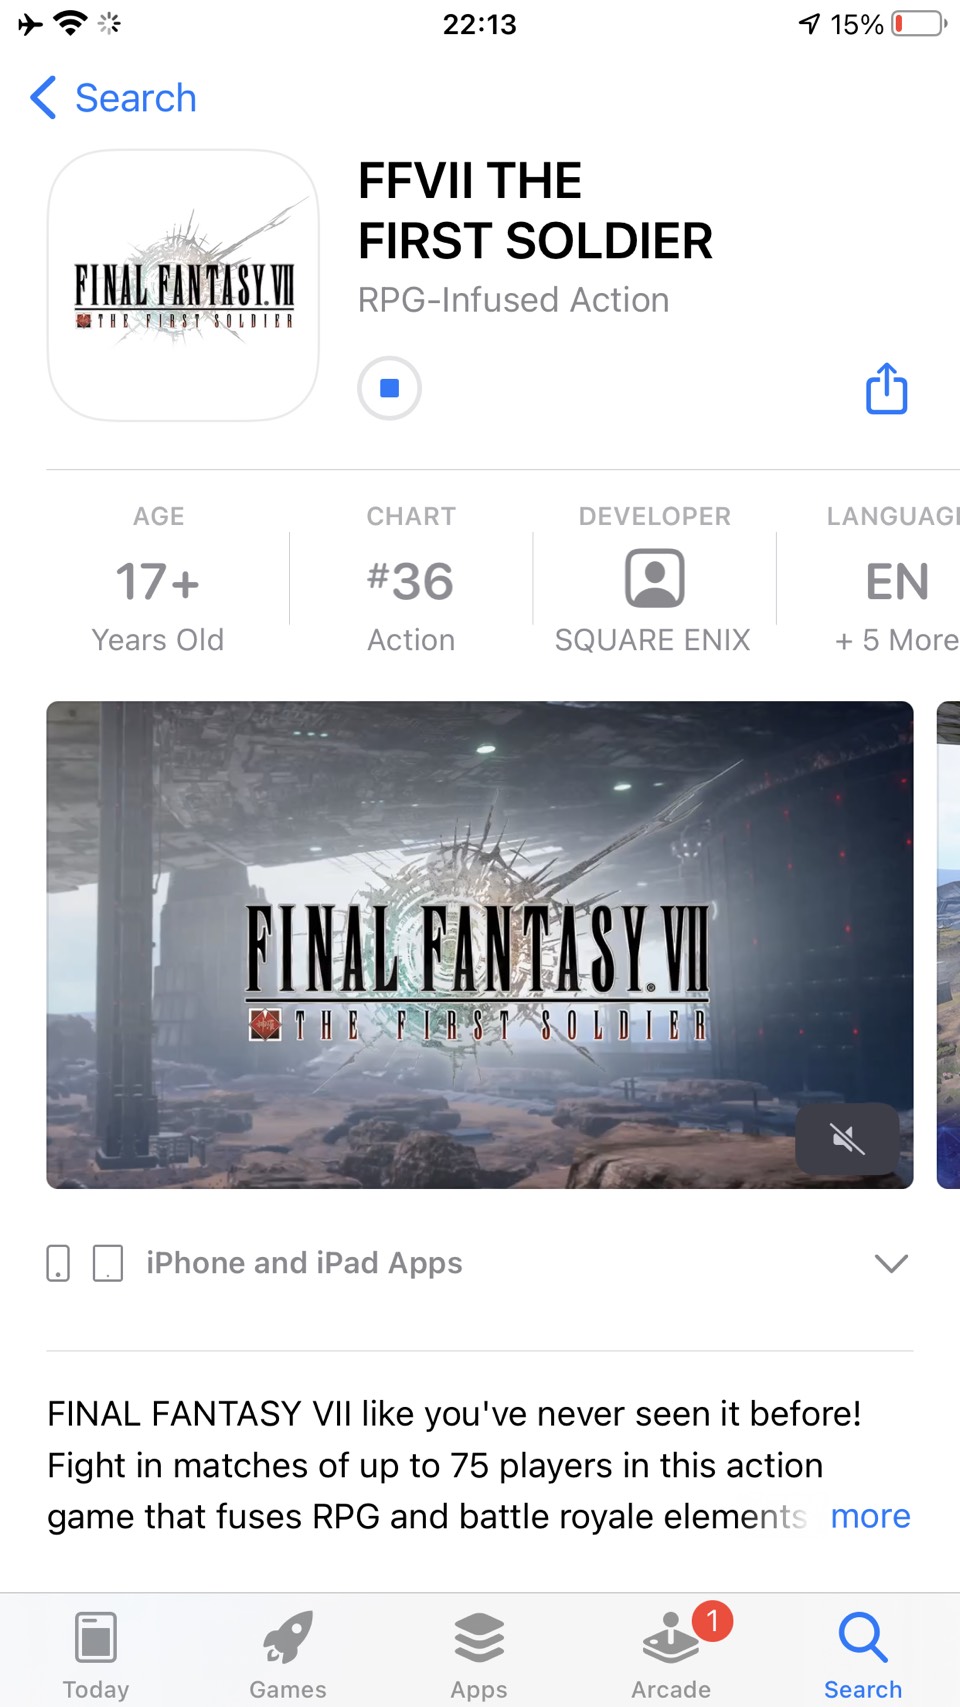 Nóng! Siêu phẩm Final Fantasy VII đã cho tải trước, hướng dẫn tải trong 1 nốt nhạc, bất chấp chặn người Việt - Ảnh 8.